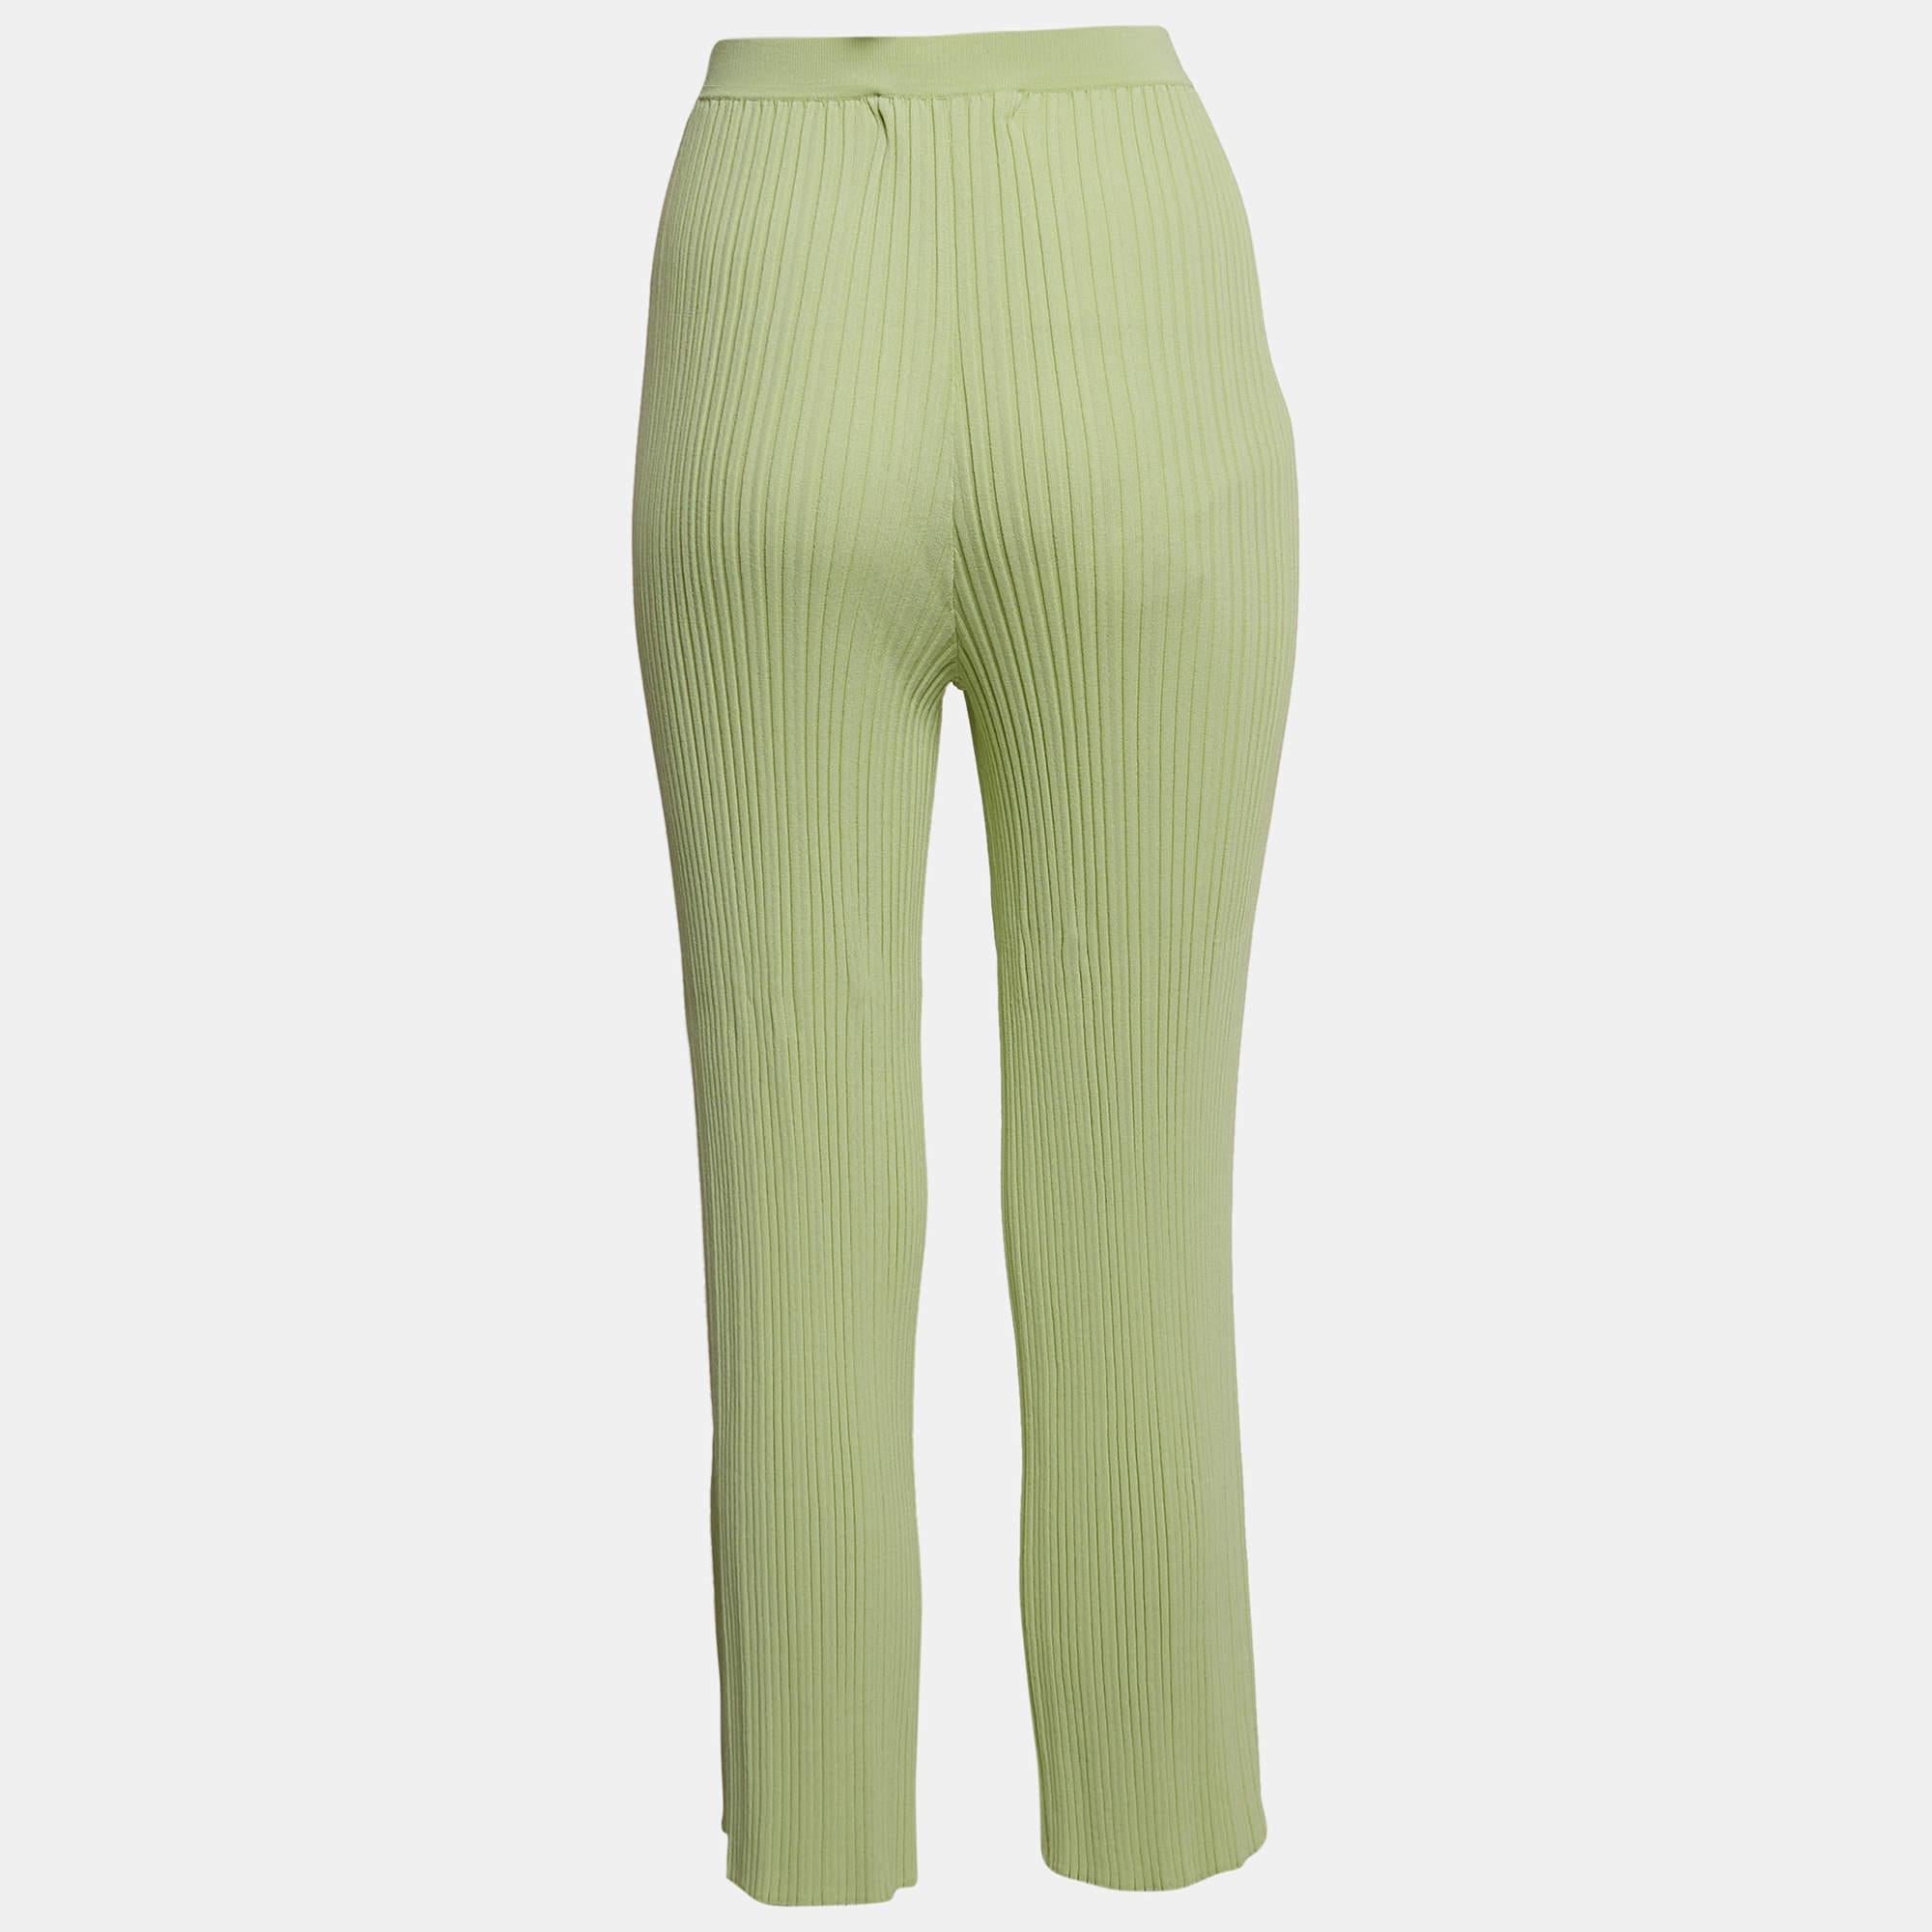 Les pantalons de Dion Lee témoignent d'une élégance moderne. La texture côtelée ajoute de la profondeur, tandis que la teinte vert menthe exsude la sophistication. Conçu pour le confort et le style, ce pantalon allie harmonieusement polyvalence et